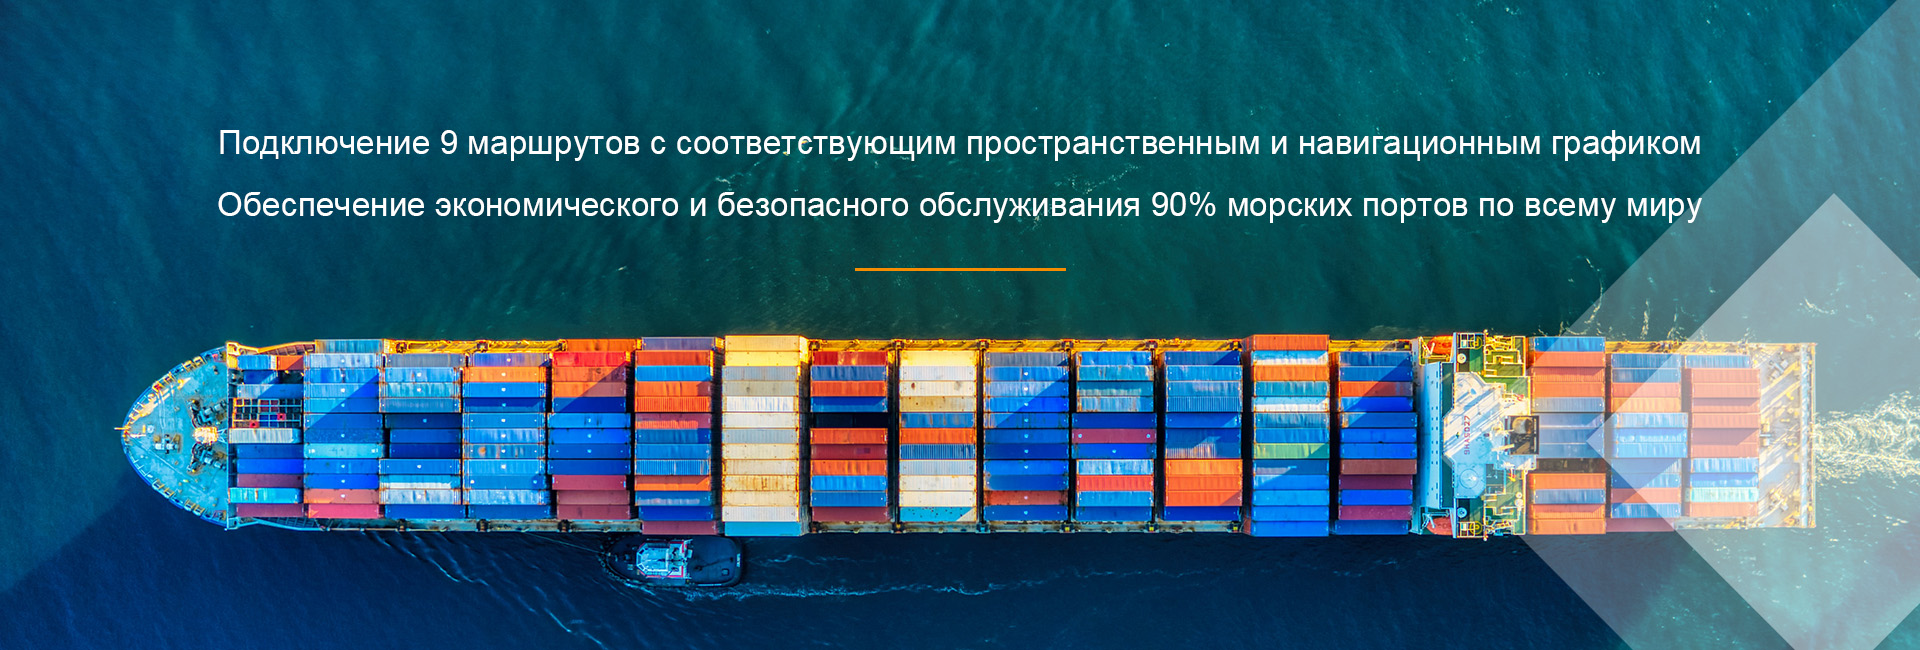 Licencia de exportación barata Transporte marítimo con la actitud adecuada